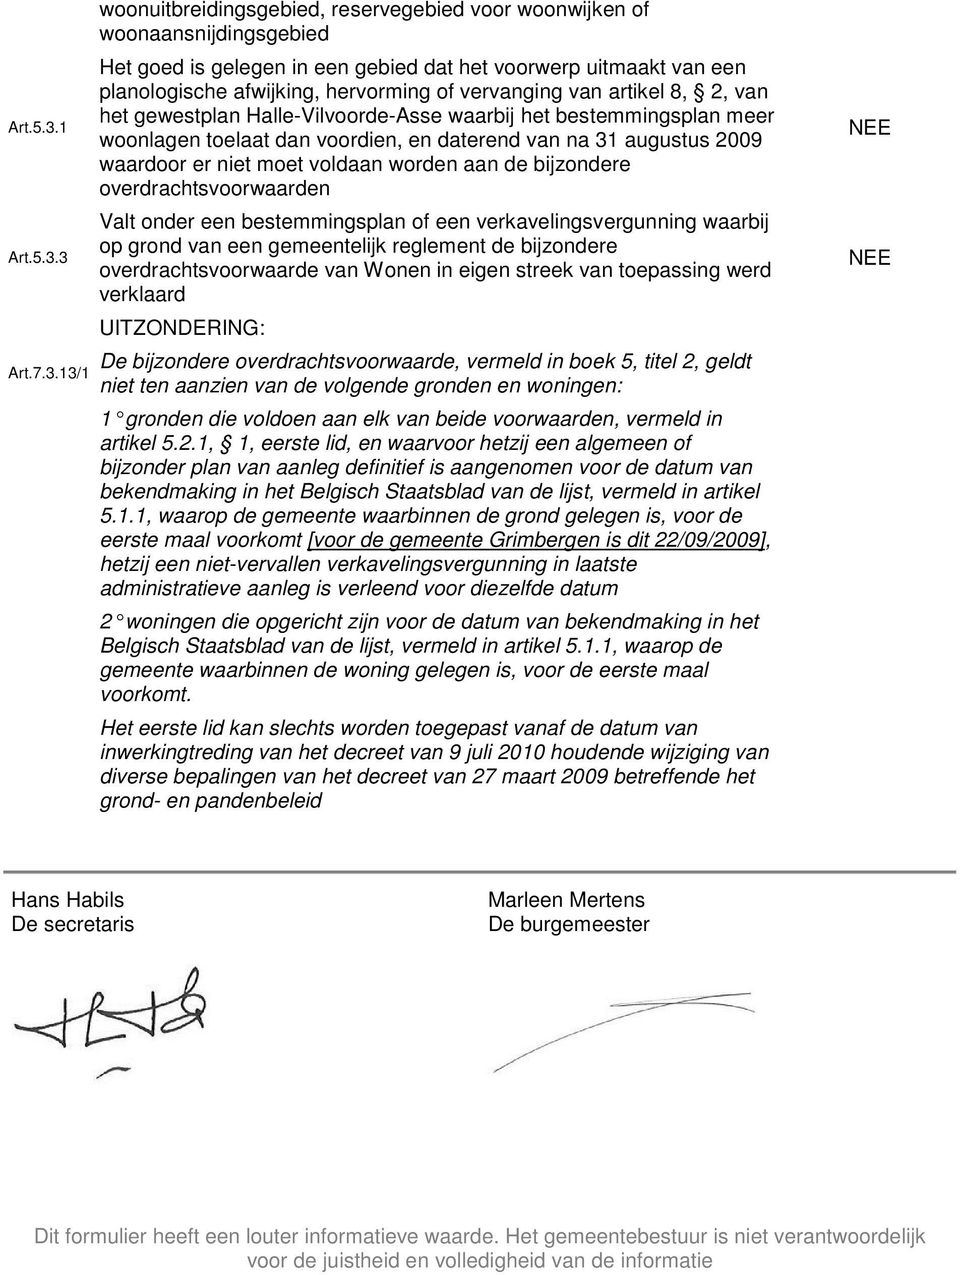 hervorming of vervanging van artikel 8, 2, van het gewestplan Halle-Vilvoorde-Asse waarbij het bestemmingsplan meer woonlagen toelaat dan voordien, en daterend van na 31 augustus 2009 waardoor er